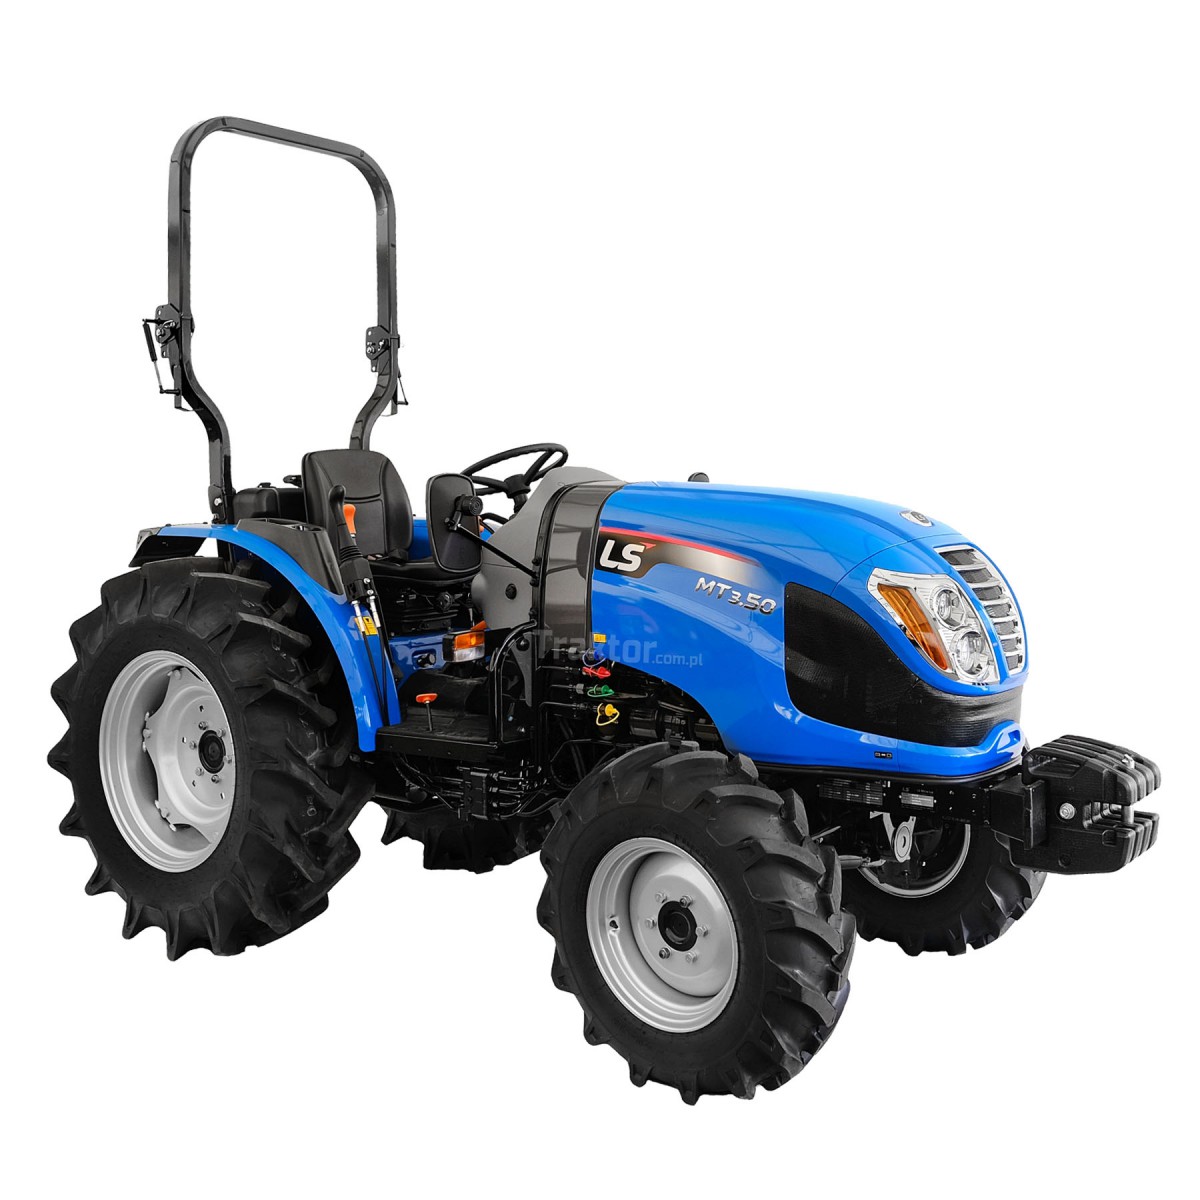 LS Traktor MT3.50 MEC 4x4 - 47 HP